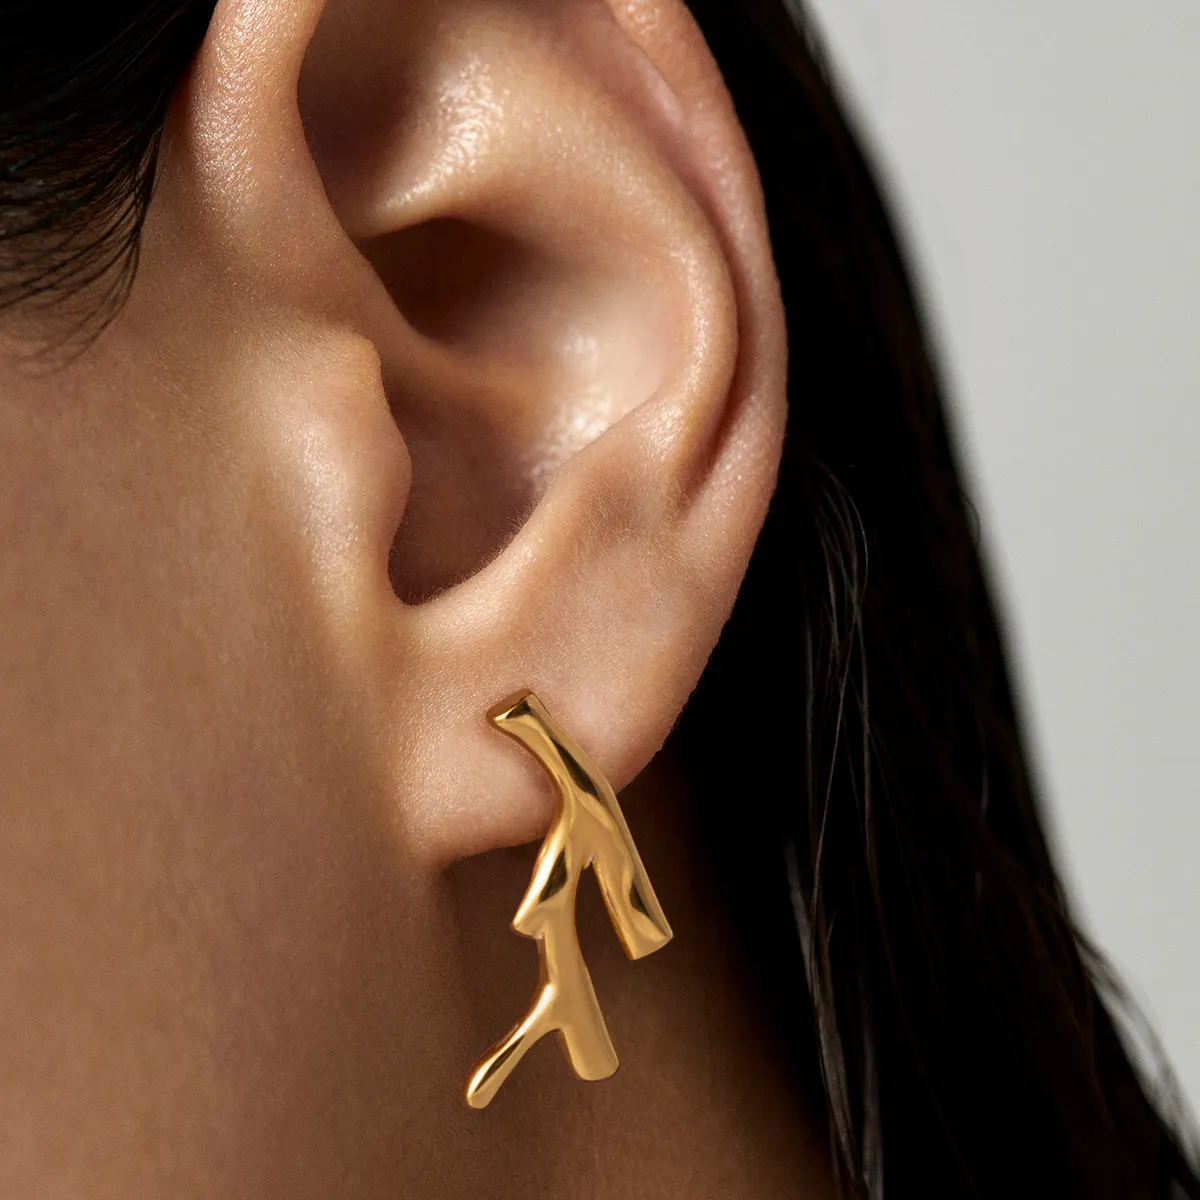 J & D gioielli moda acciaio inox oceano serie orecchino 18K placcato oro testurizzato corallo orecchino